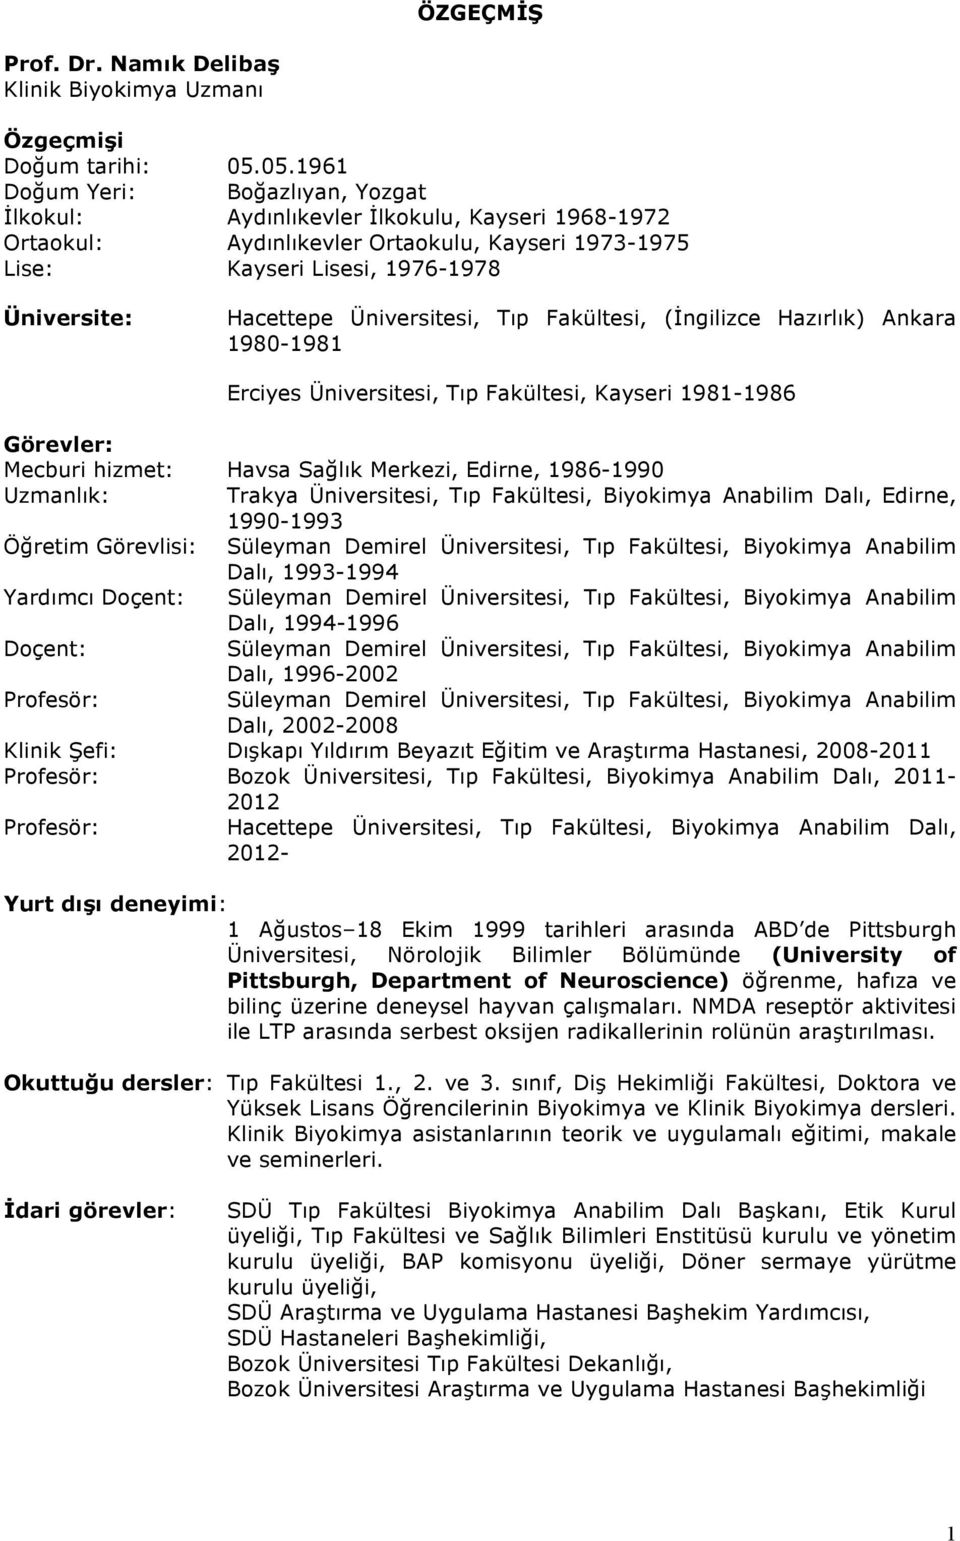 Üniversitesi, Tıp Fakültesi, (İngilizce Hazırlık) Ankara 1980-1981 Erciyes Üniversitesi, Tıp Fakültesi, Kayseri 1981-1986 Görevler: Mecburi hizmet: Havsa Sağlık Merkezi, Edirne, 1986-1990 Uzmanlık: